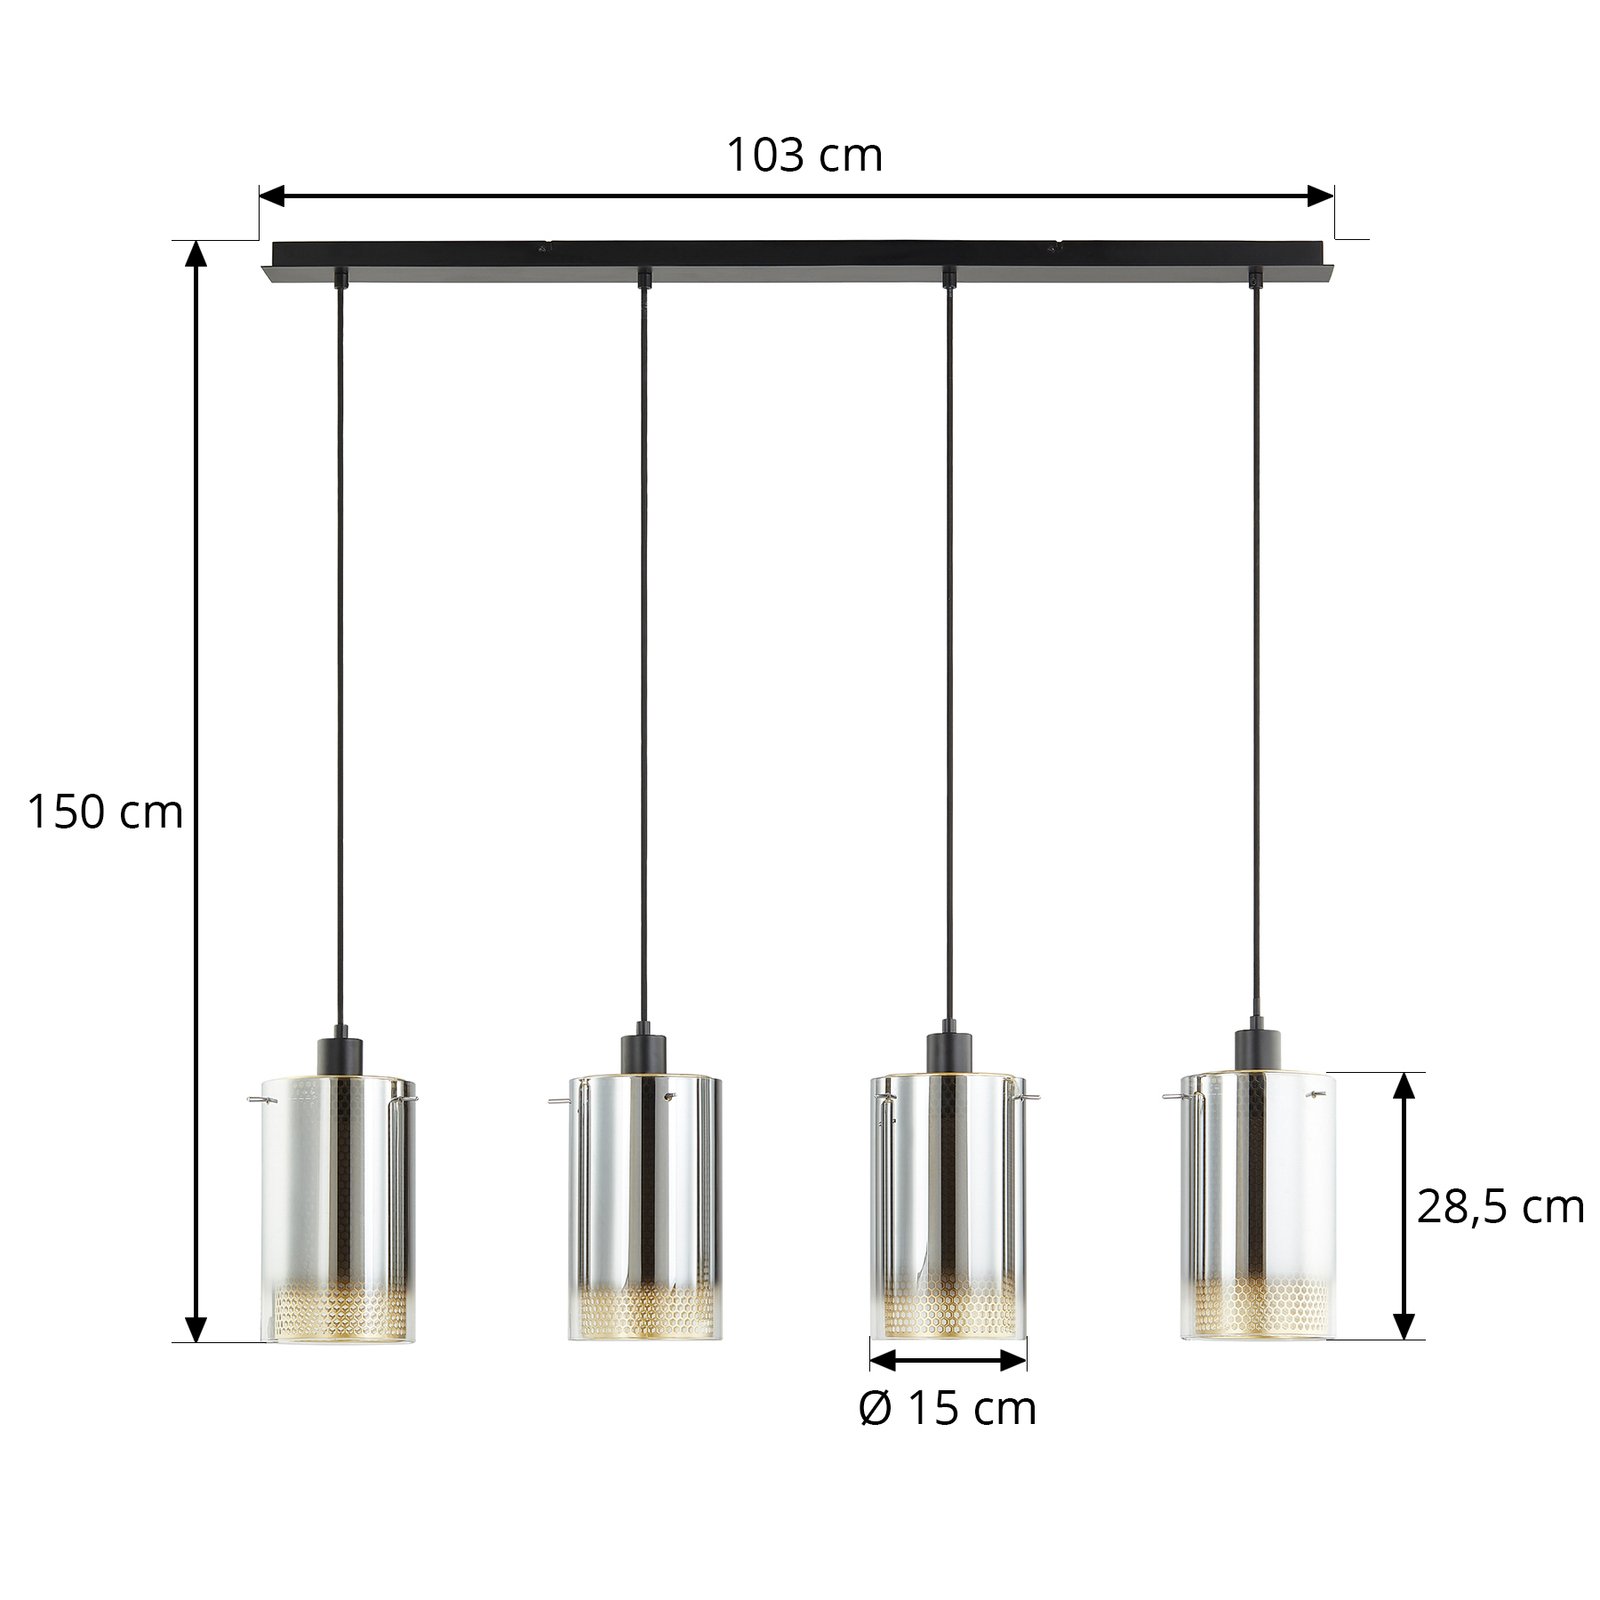 Lucande hanglamp Sterzy, 105 cm lang, grijs, glas, 4-lamps.